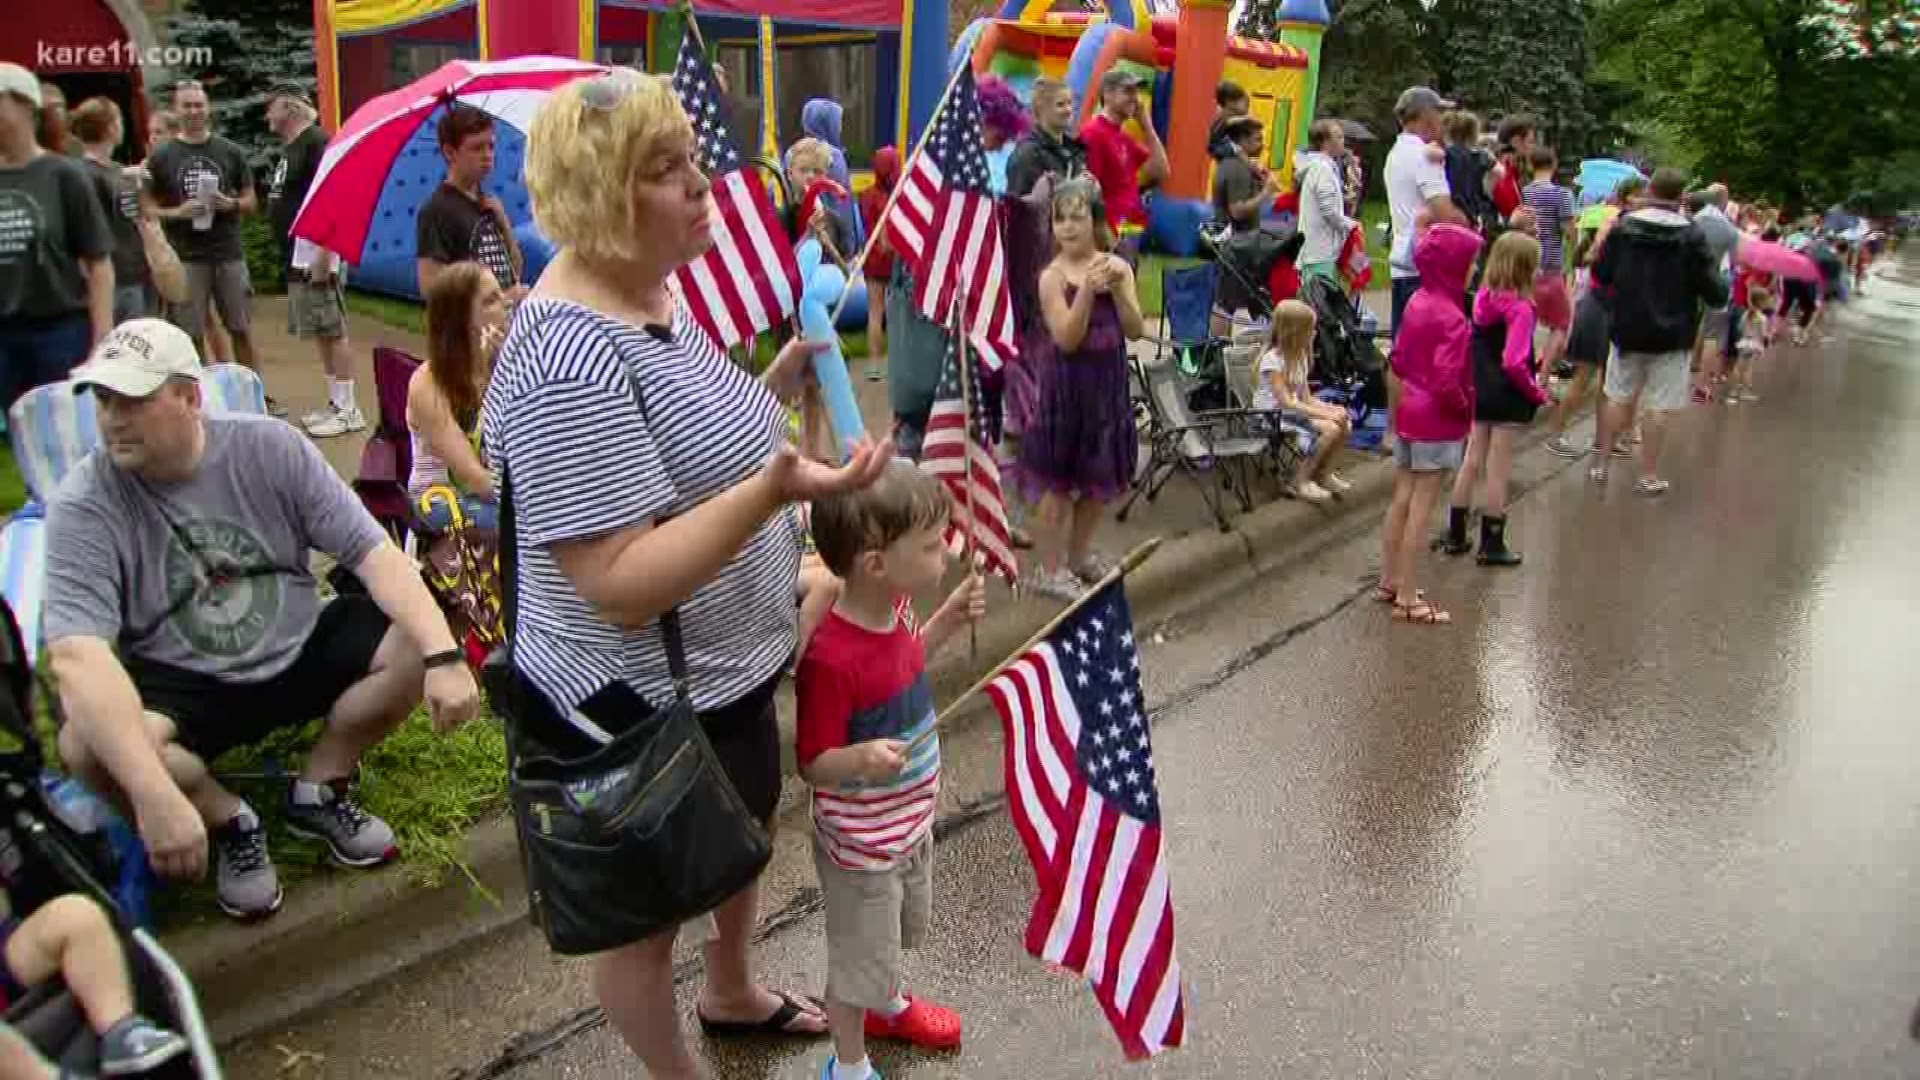 Edina's 4th of July Parade marches forward after heavy rain